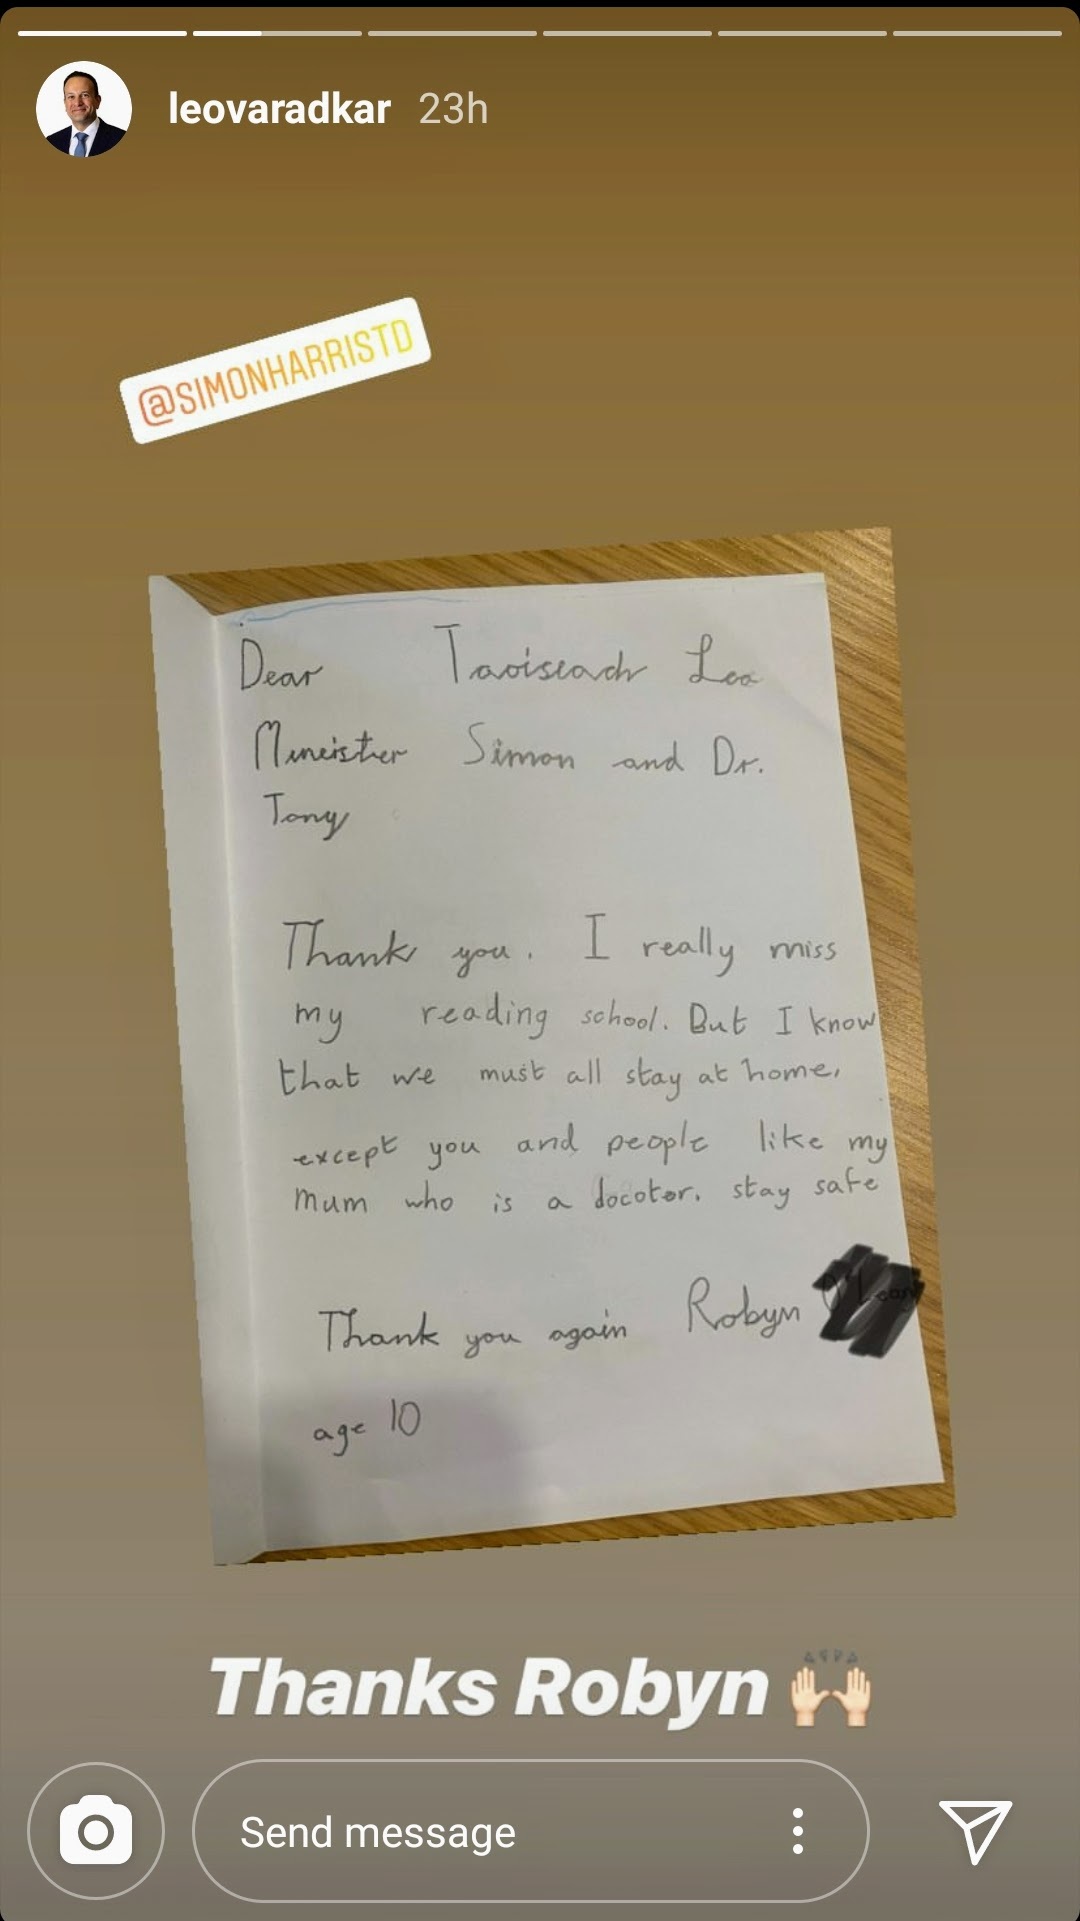 ディア・レオ…ヴァラッカー首相へ、子どもたちから励ましの手紙 ナオコガイドのアイルランド日記